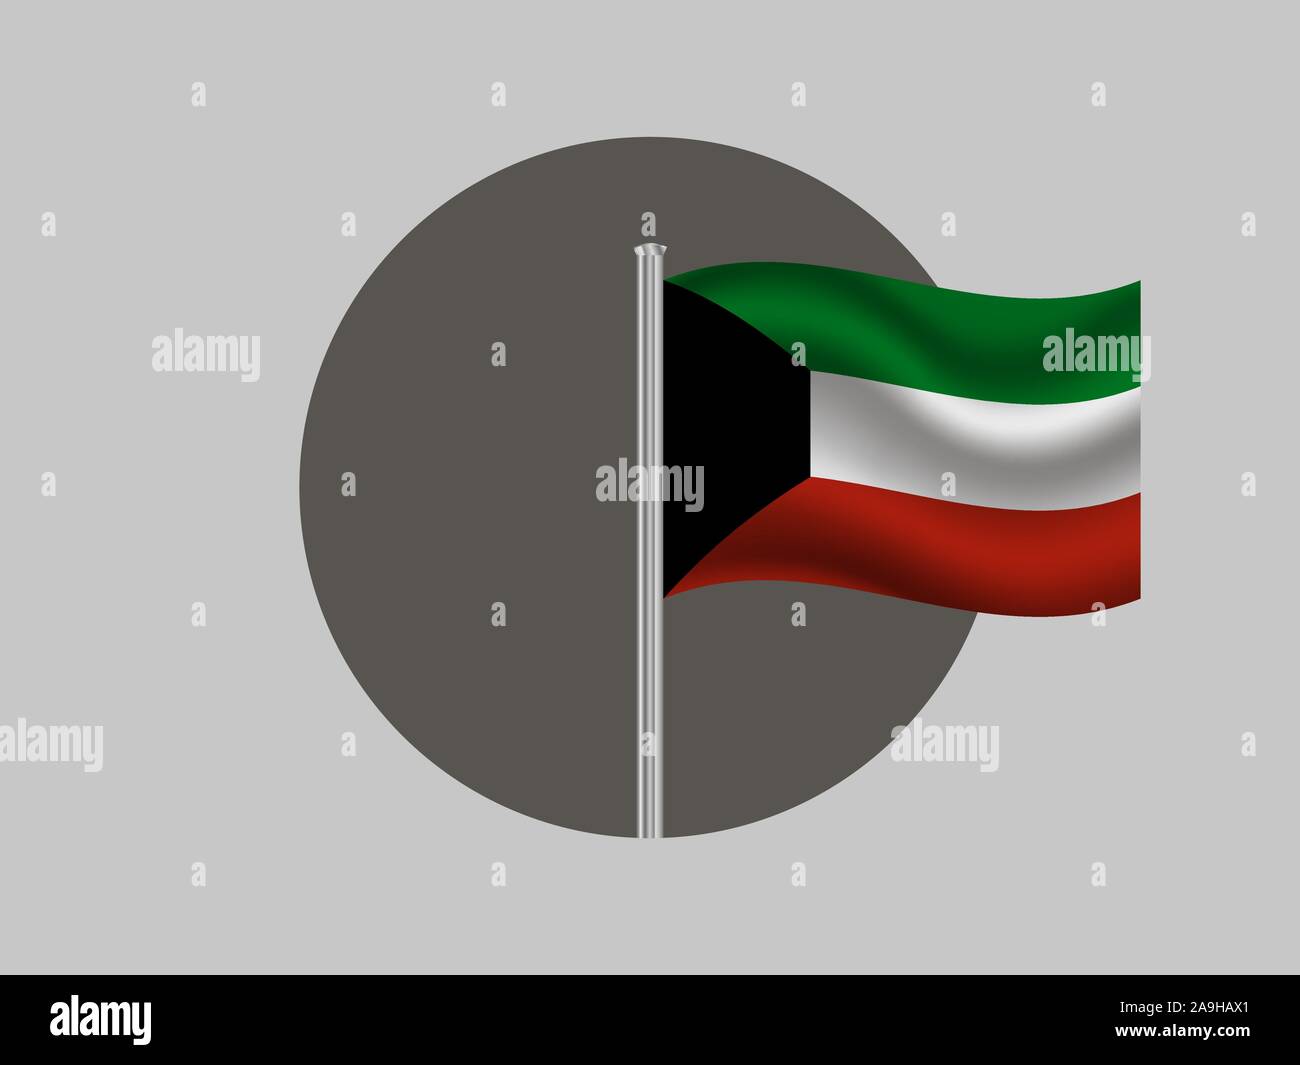 Chiêm ngưỡng bức ảnh về biển hiệu Kuwait đầy uy tín và đẳng cấp. Biểu tượng chữ \